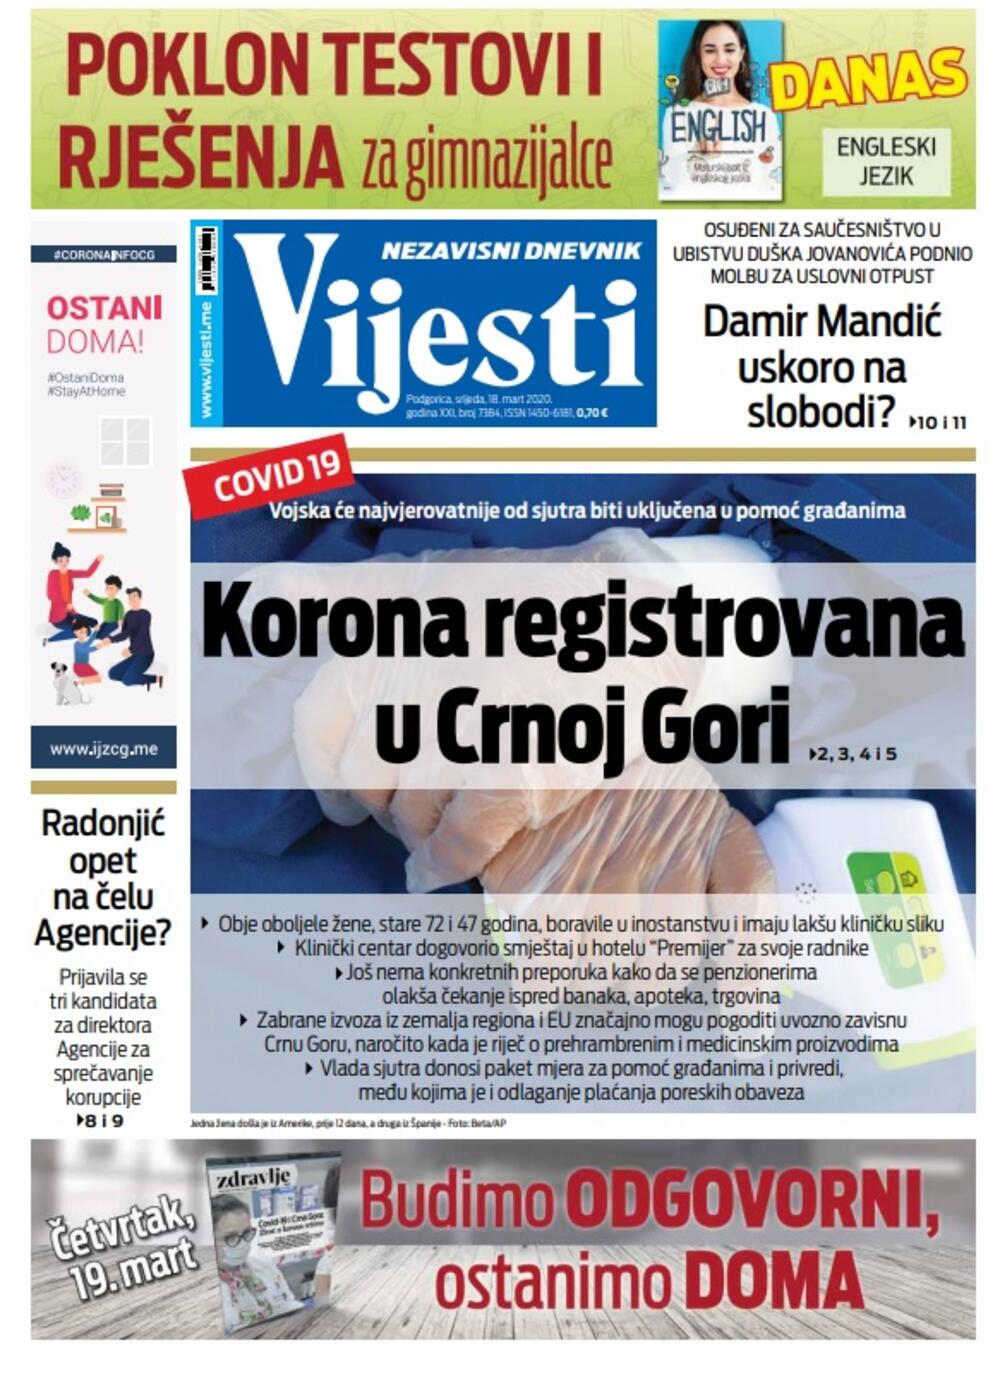 Naslovna strana "Vijesti" za srijedu 18. mart 2020. godine